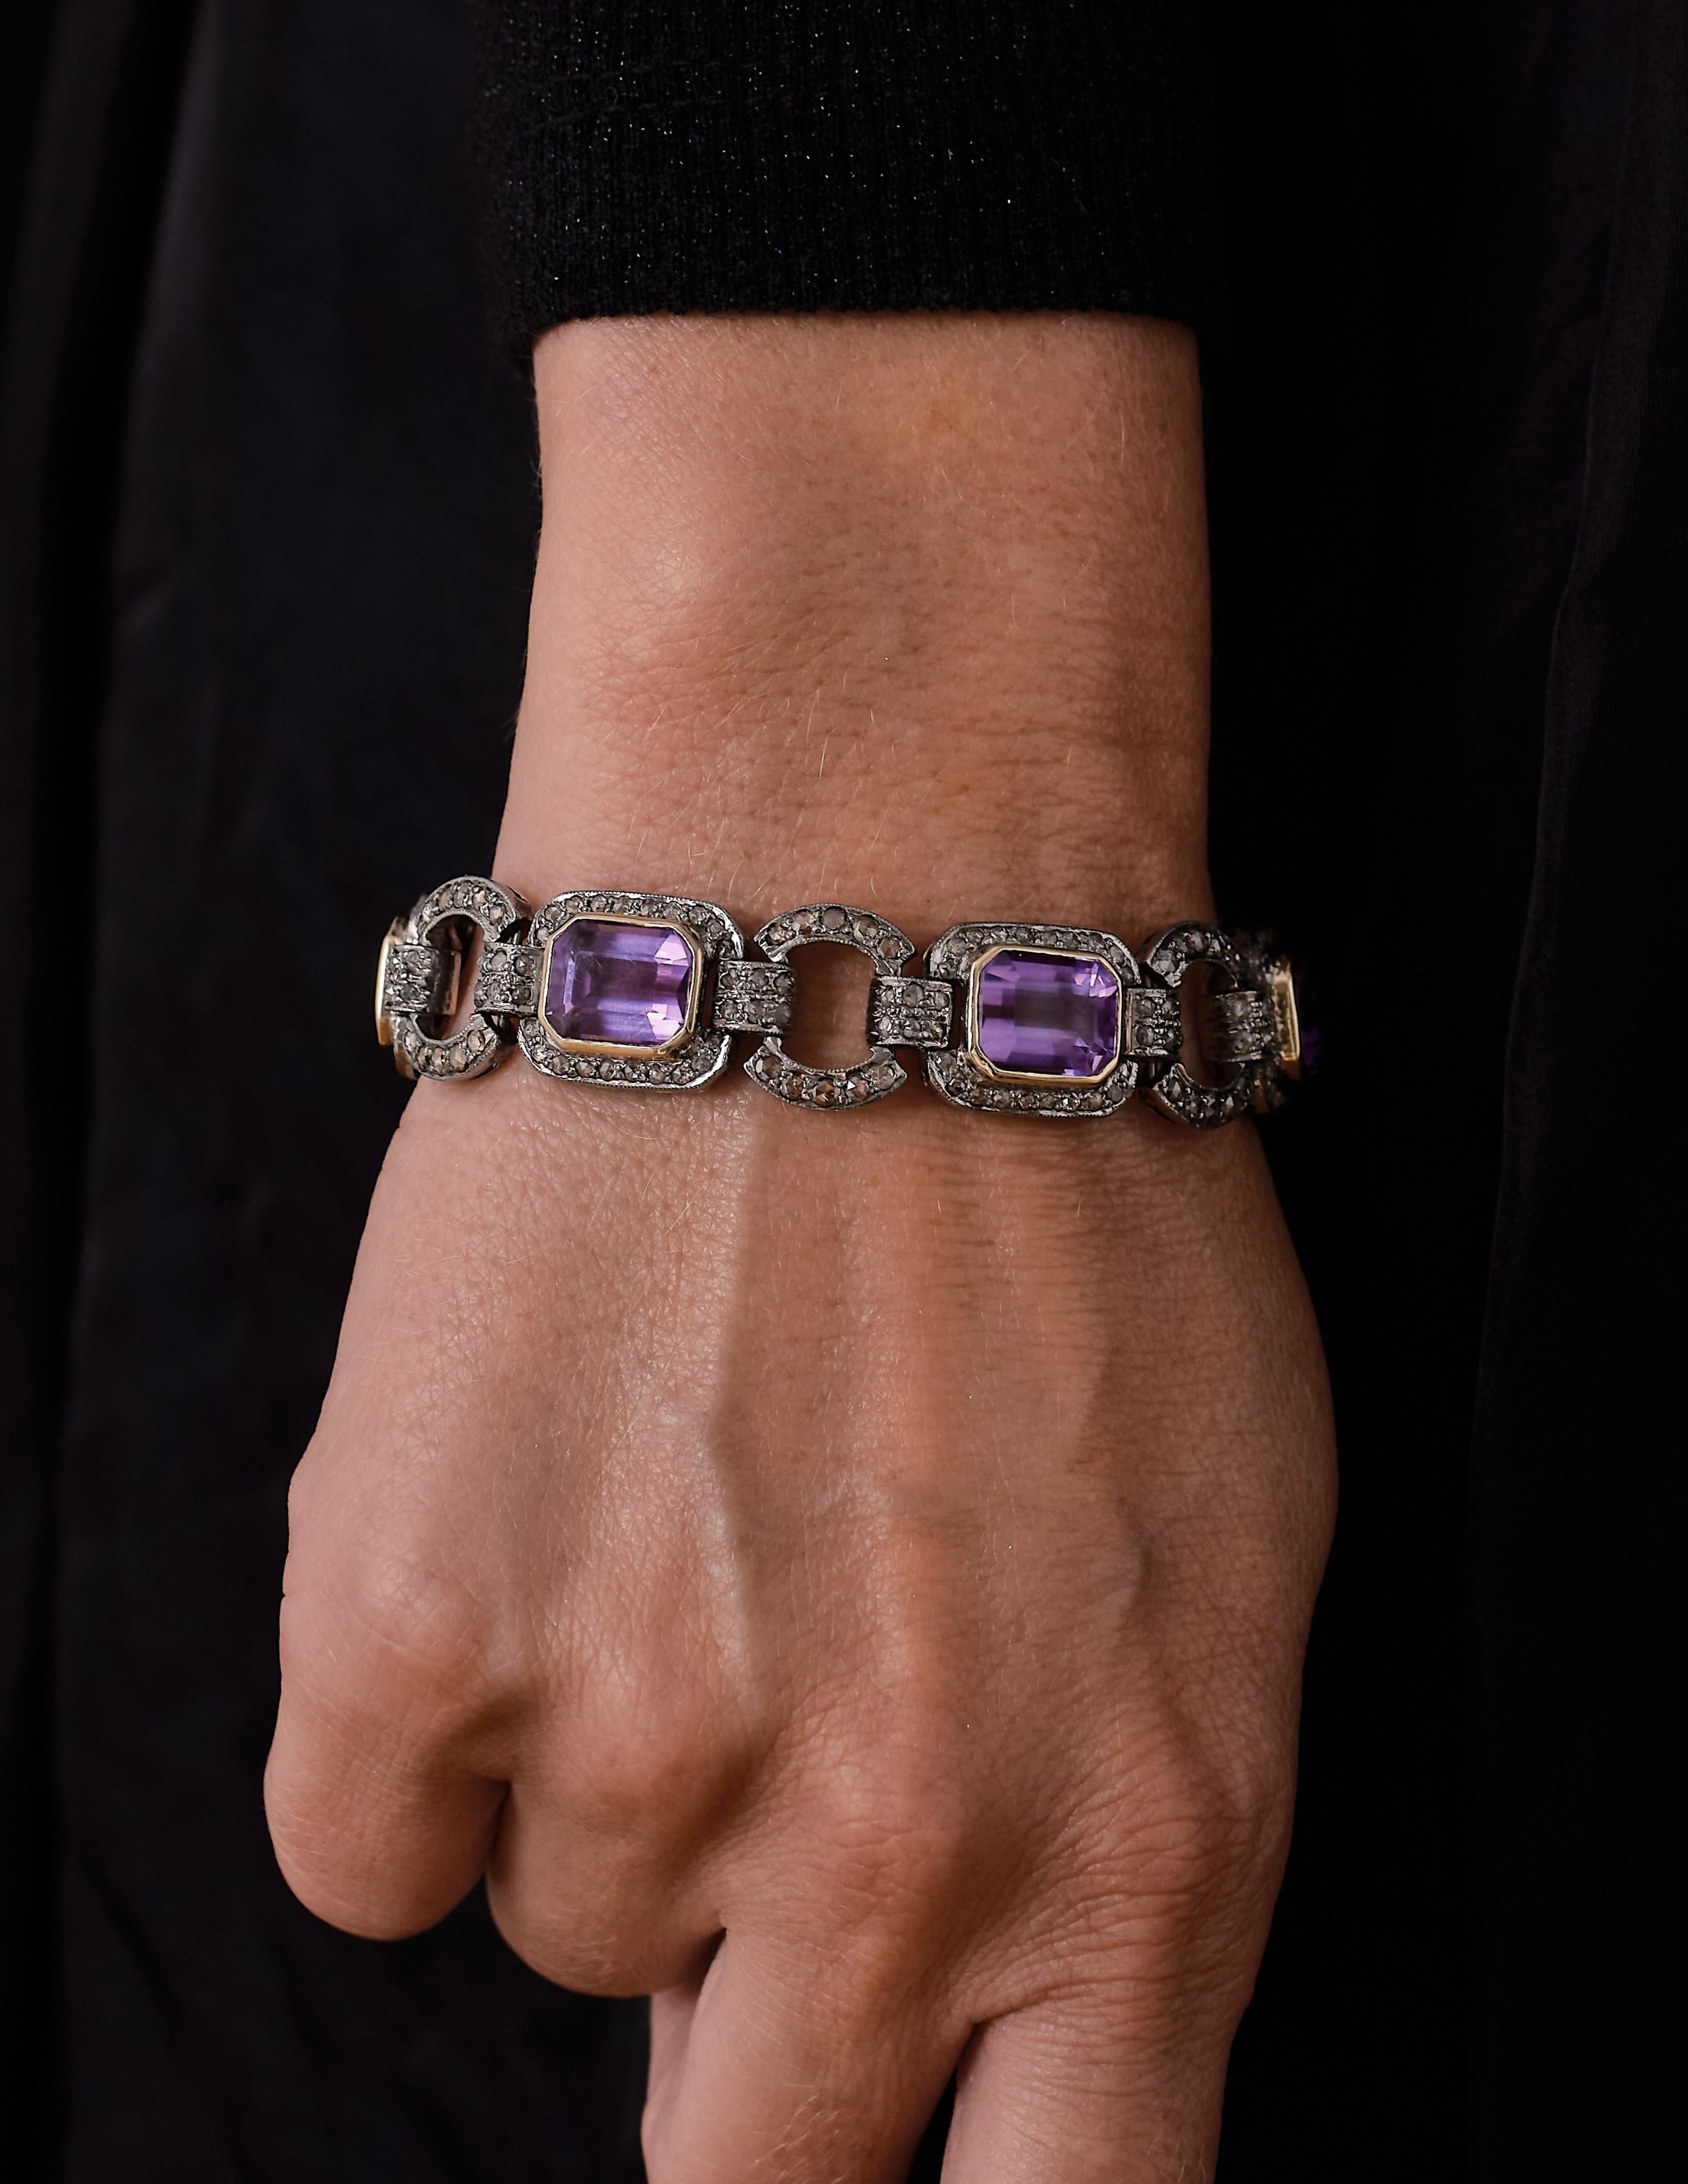 Seltenes antikes Belle-Epoque-Armband aus natürlichem Amethyst. 

Besetzt mit 6 wunderschönen lilafarbenen russischen Amethysten mit einem Gesamtgewicht von ca. 24,84 ct. und schimmernden Diamanten im Rosenschliff von insgesamt ca. 5,40 ct. 

Dieses